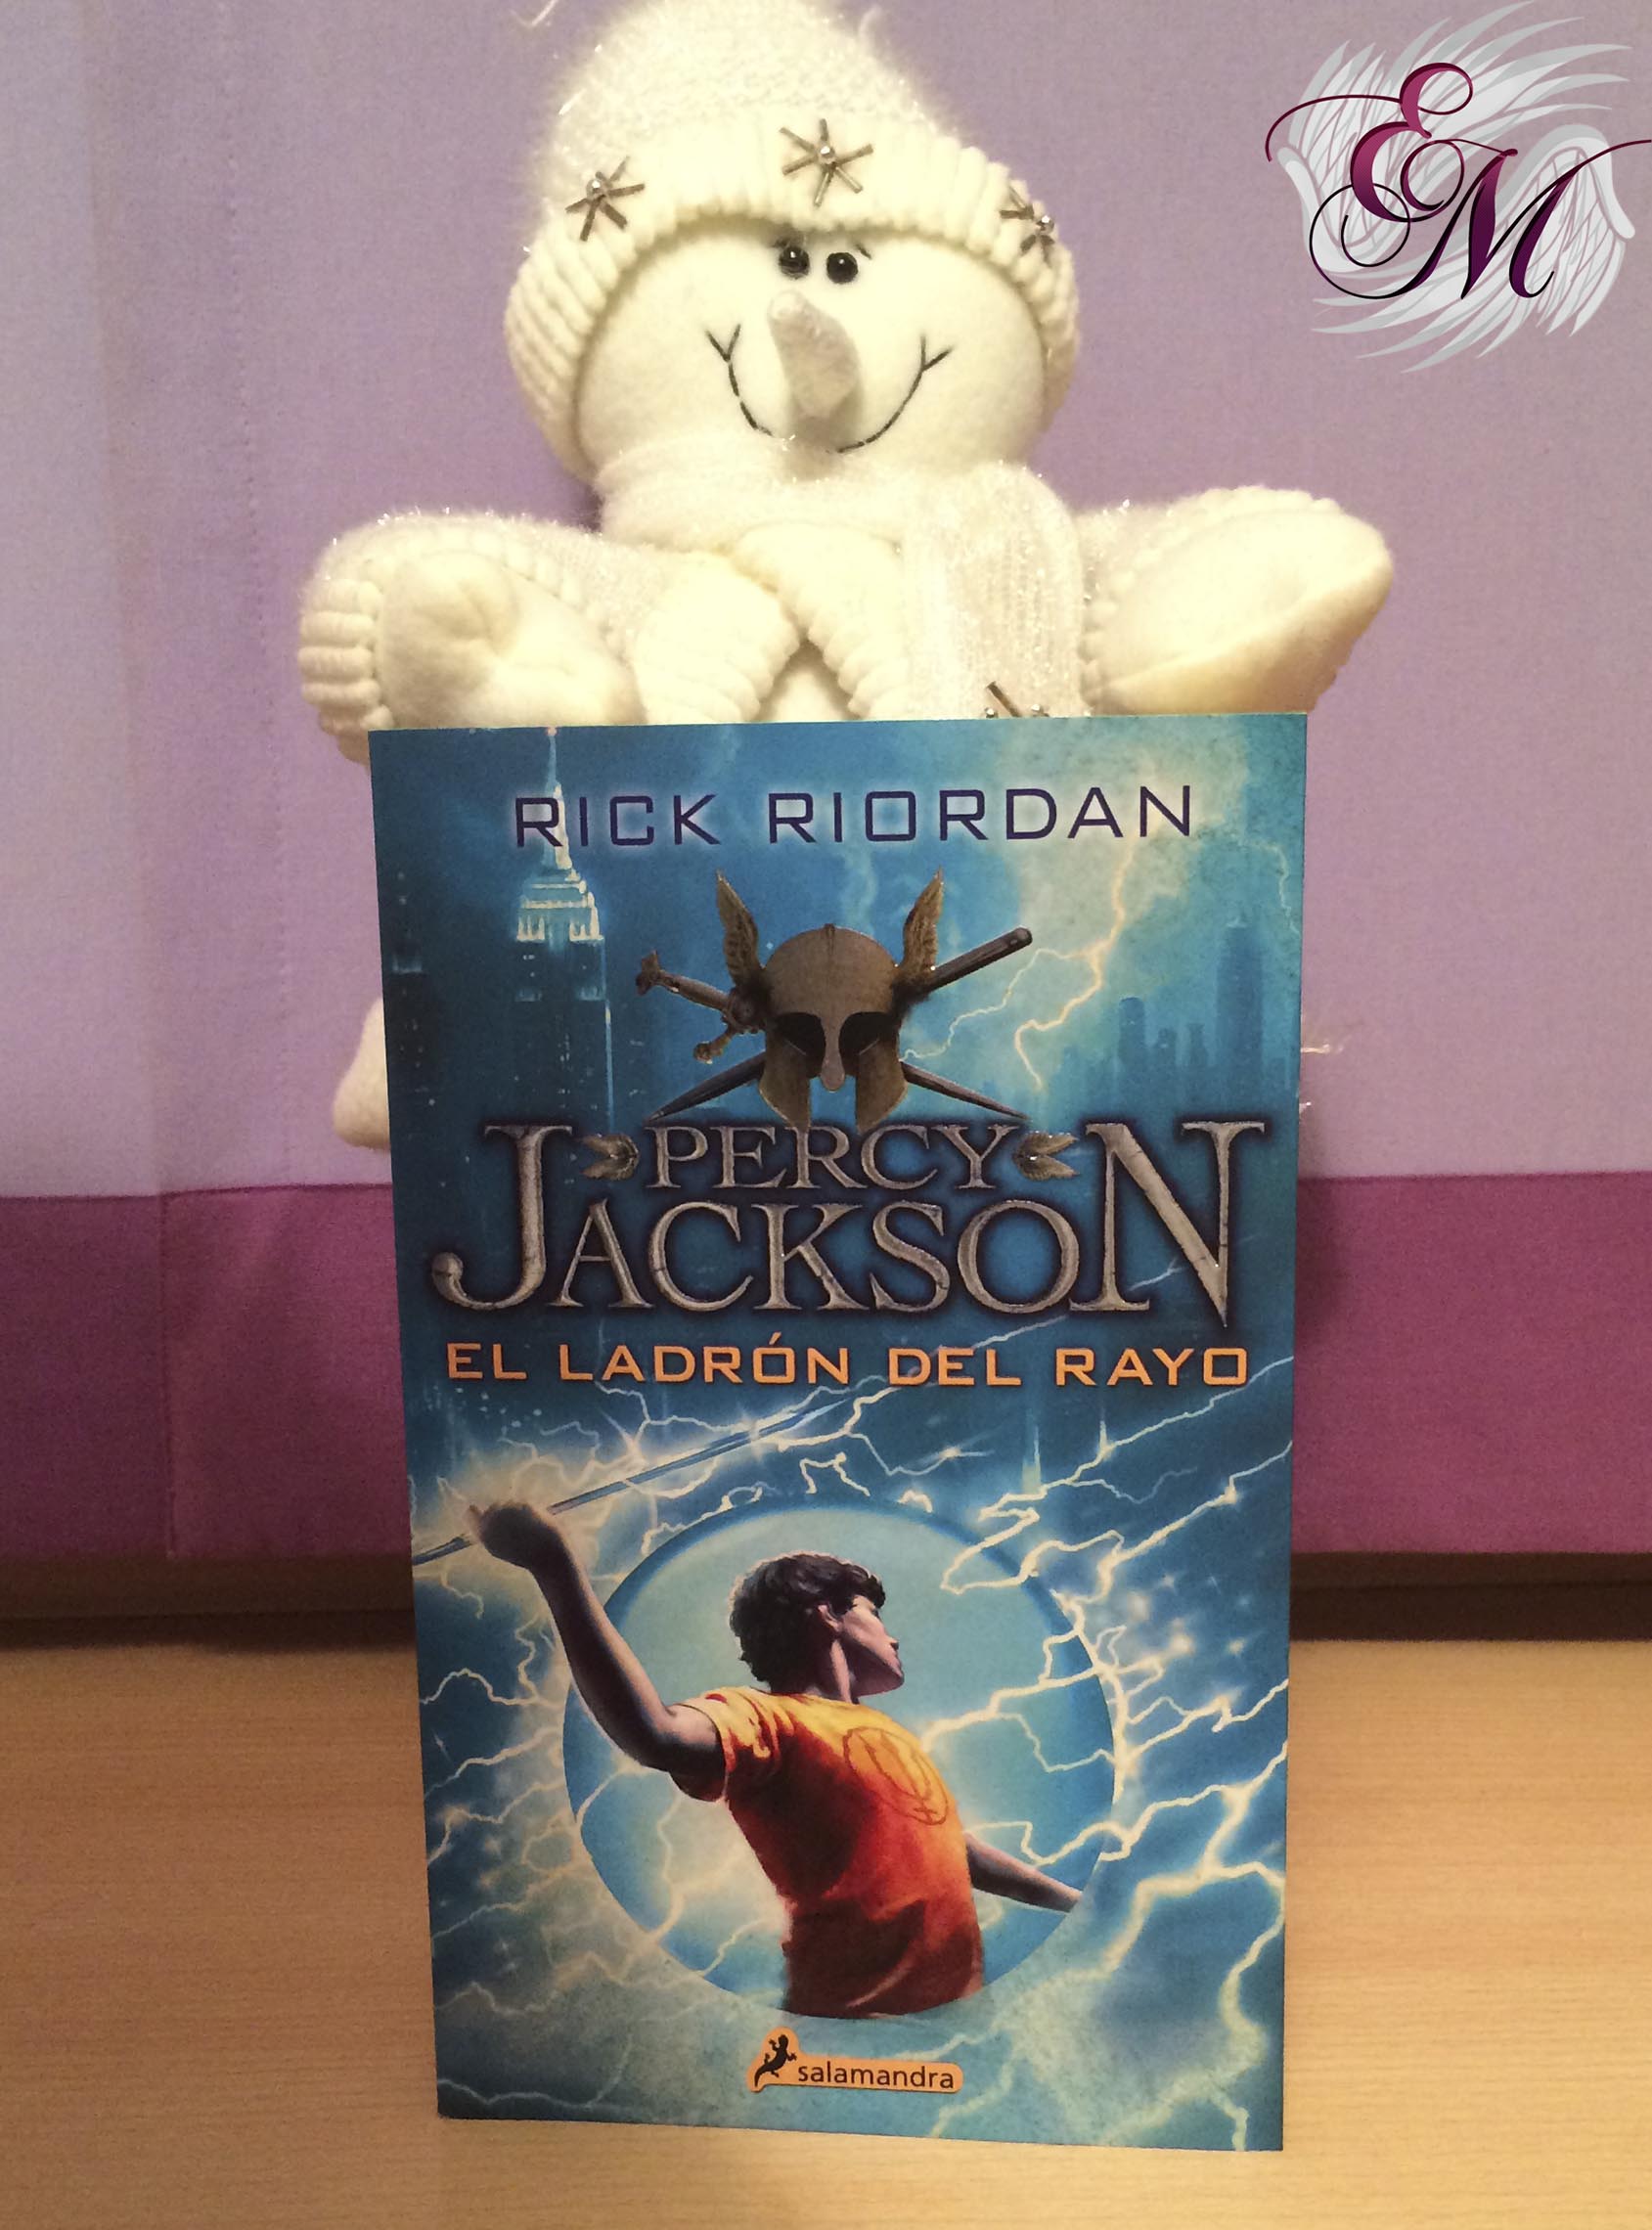 Percy Jackson y el ladrón del rayo, de Rick Riordan - Reseña